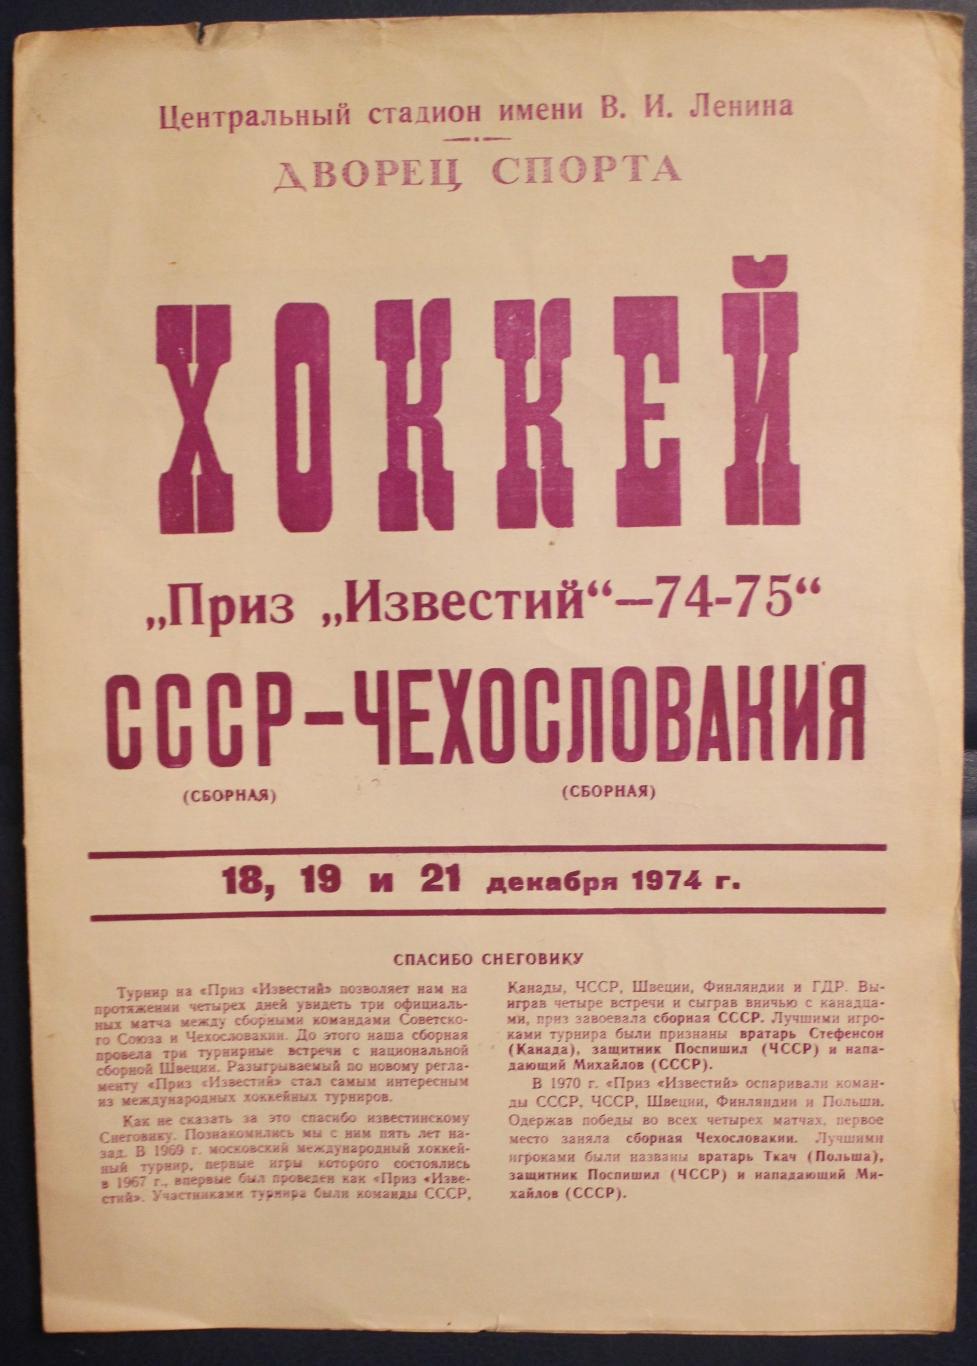 18, 19 и 21 декабря 1974 года СССР - Чехословакия Приз Известий